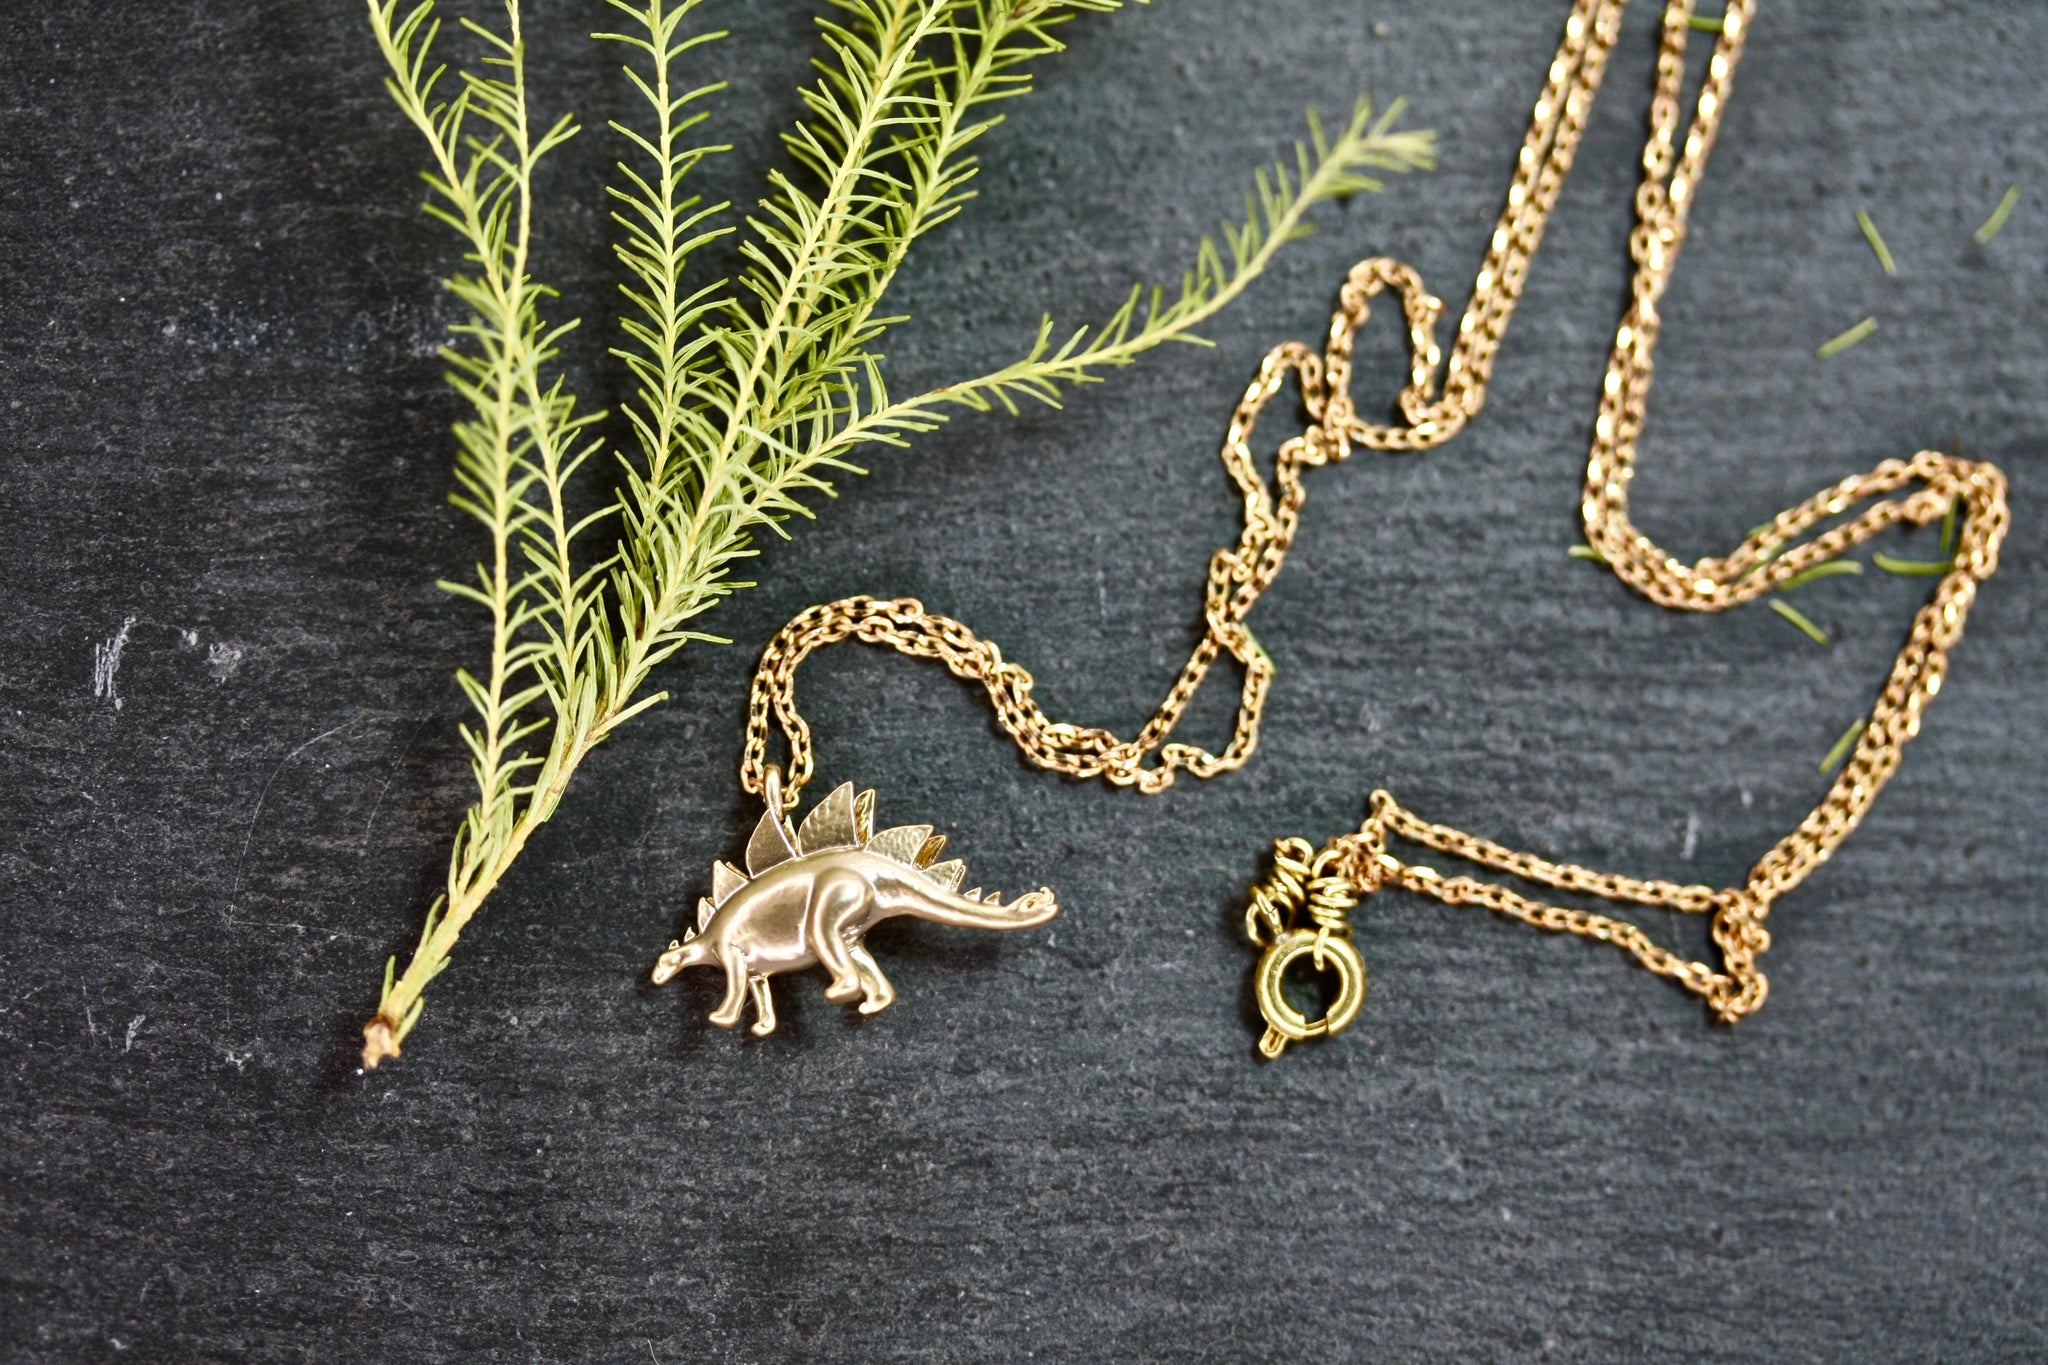 Small Dinosaur Necklace - Alloy - Silver - Black - Golden - ApolloBox